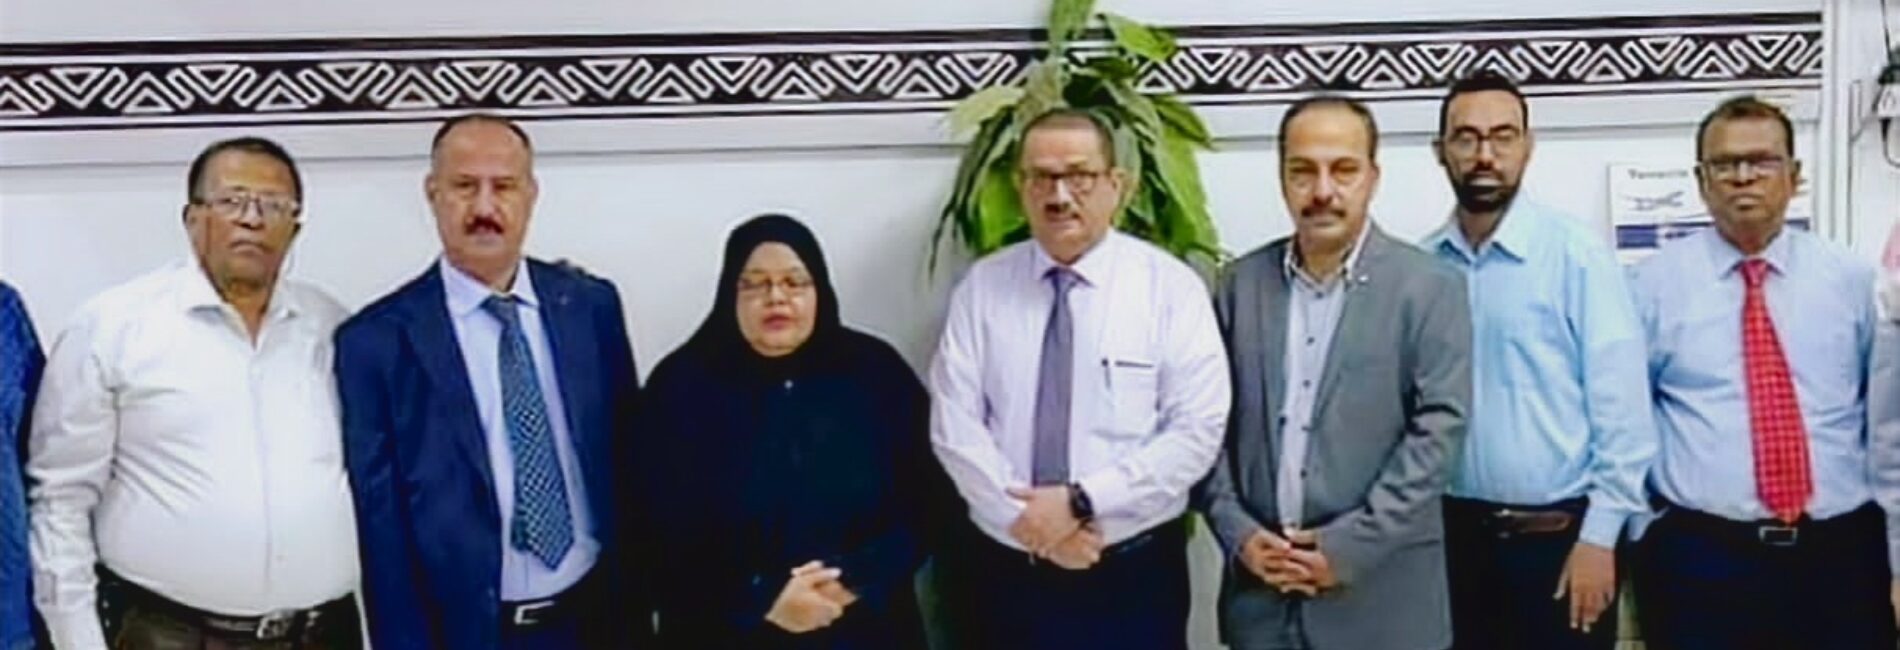 رئيس مجلس إدارة اليمنية يتفقد سير أداء العمل بمكتب المنطقة في الرياض